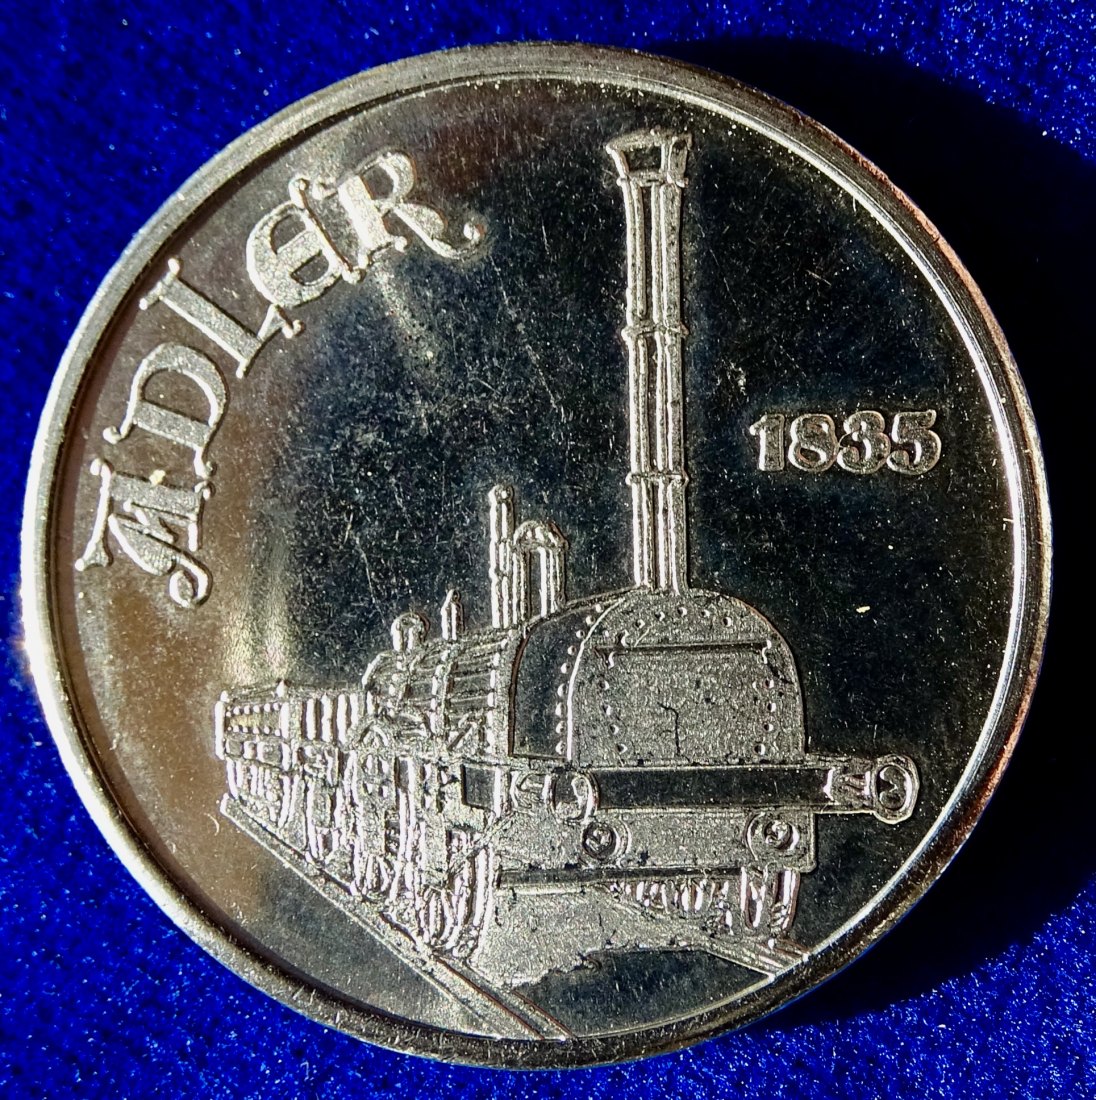  150 Jahre deutsche Eisenbahnen  Medaille 1985 Berlin Adler Lok   